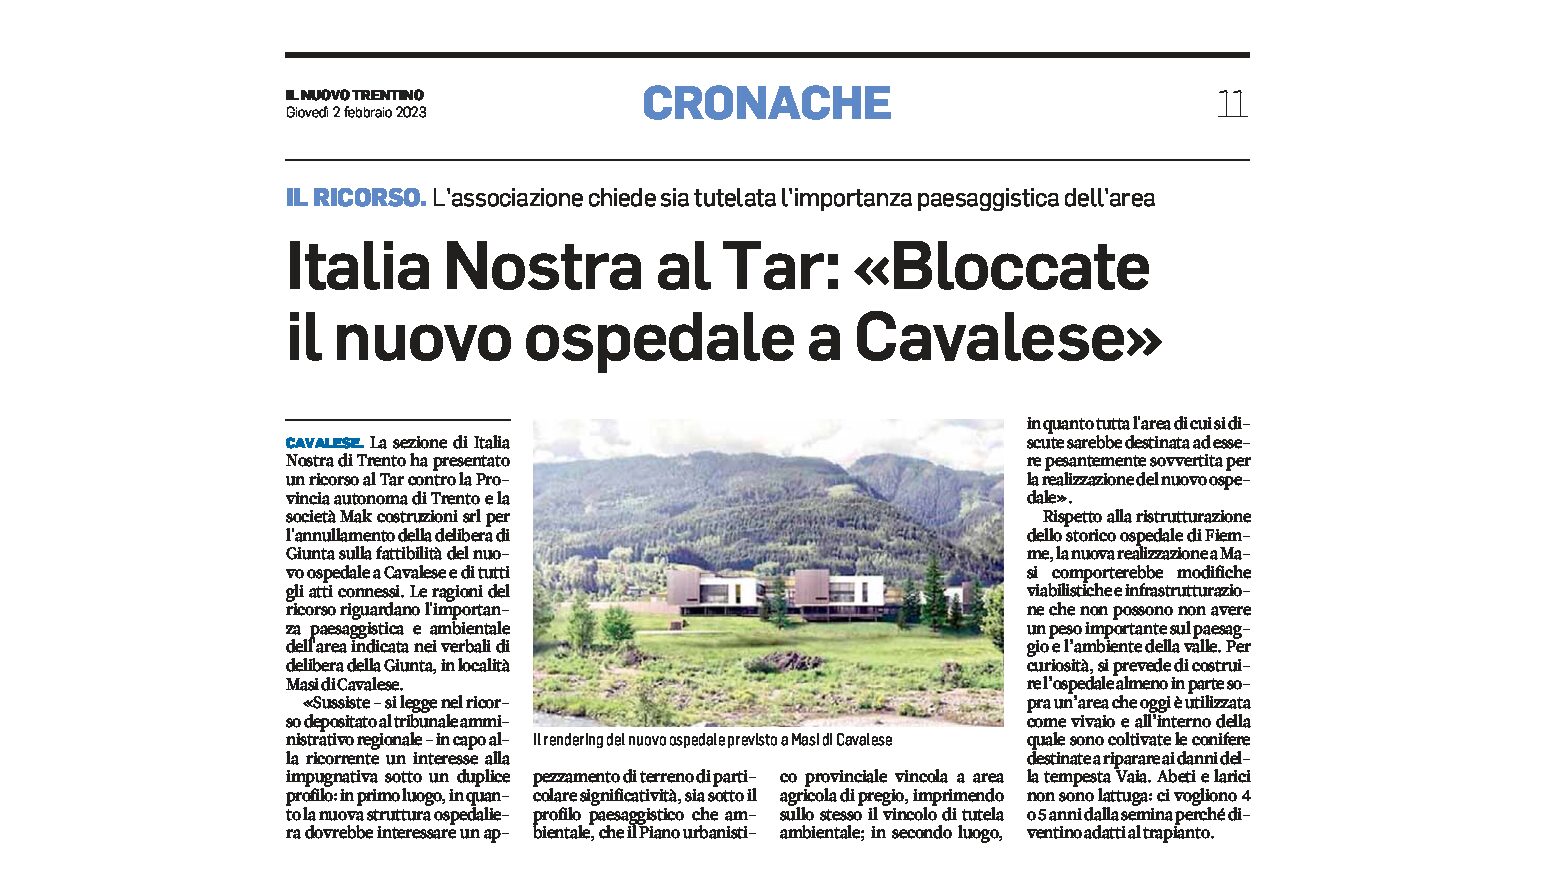 Italia Nostra al Tar: “bloccate il nuovo ospedale a Cavalese”